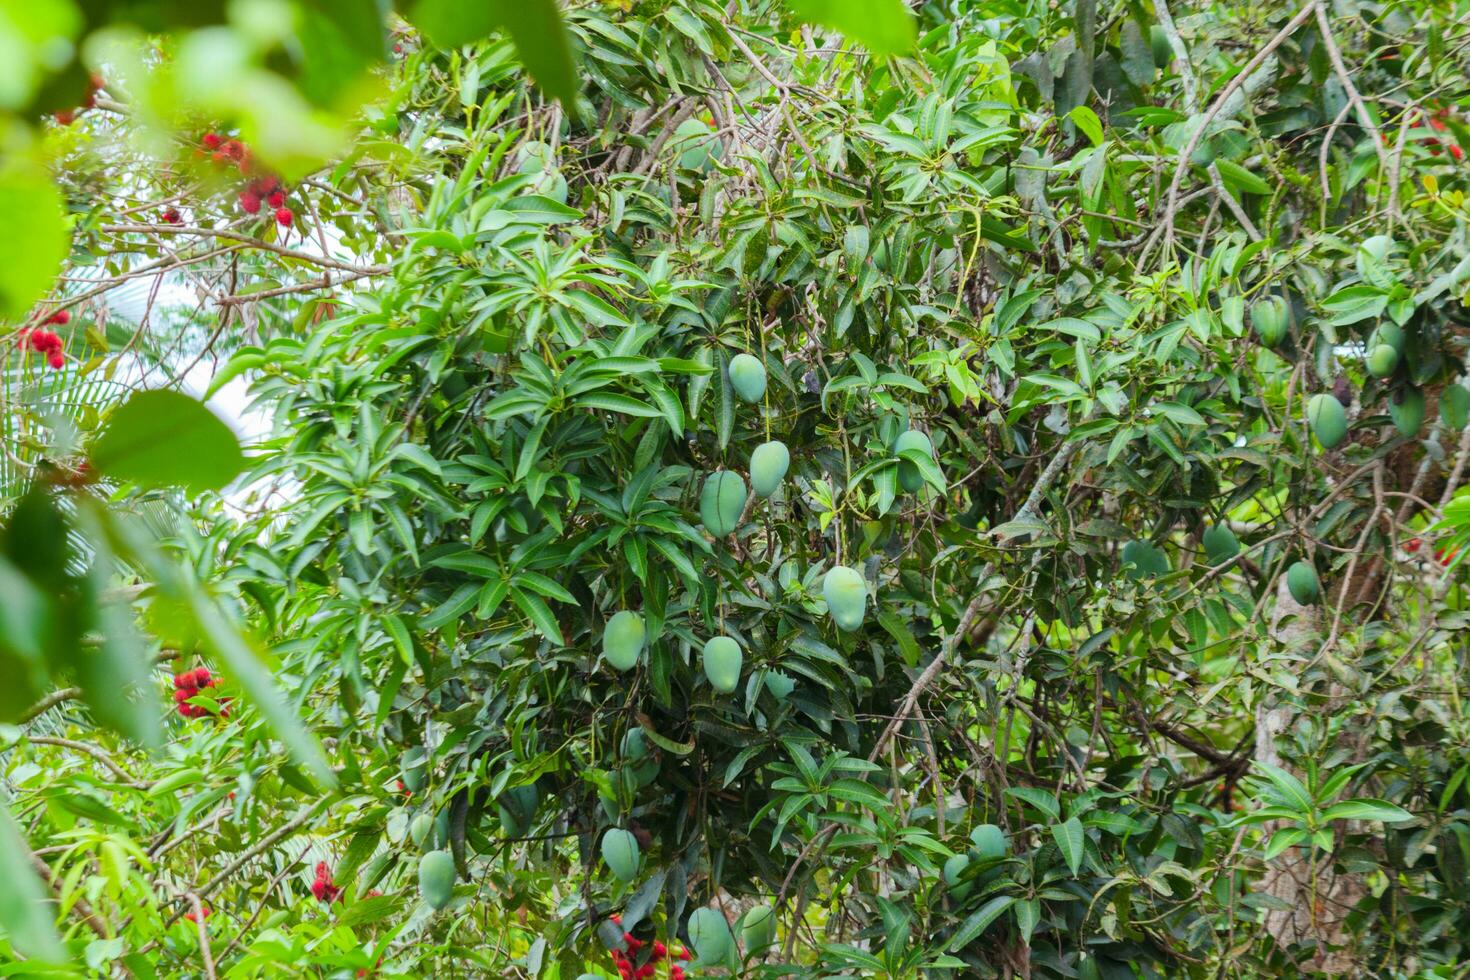 vert mangue fruit encore sur le arbre. immature et dans grand quantités photo